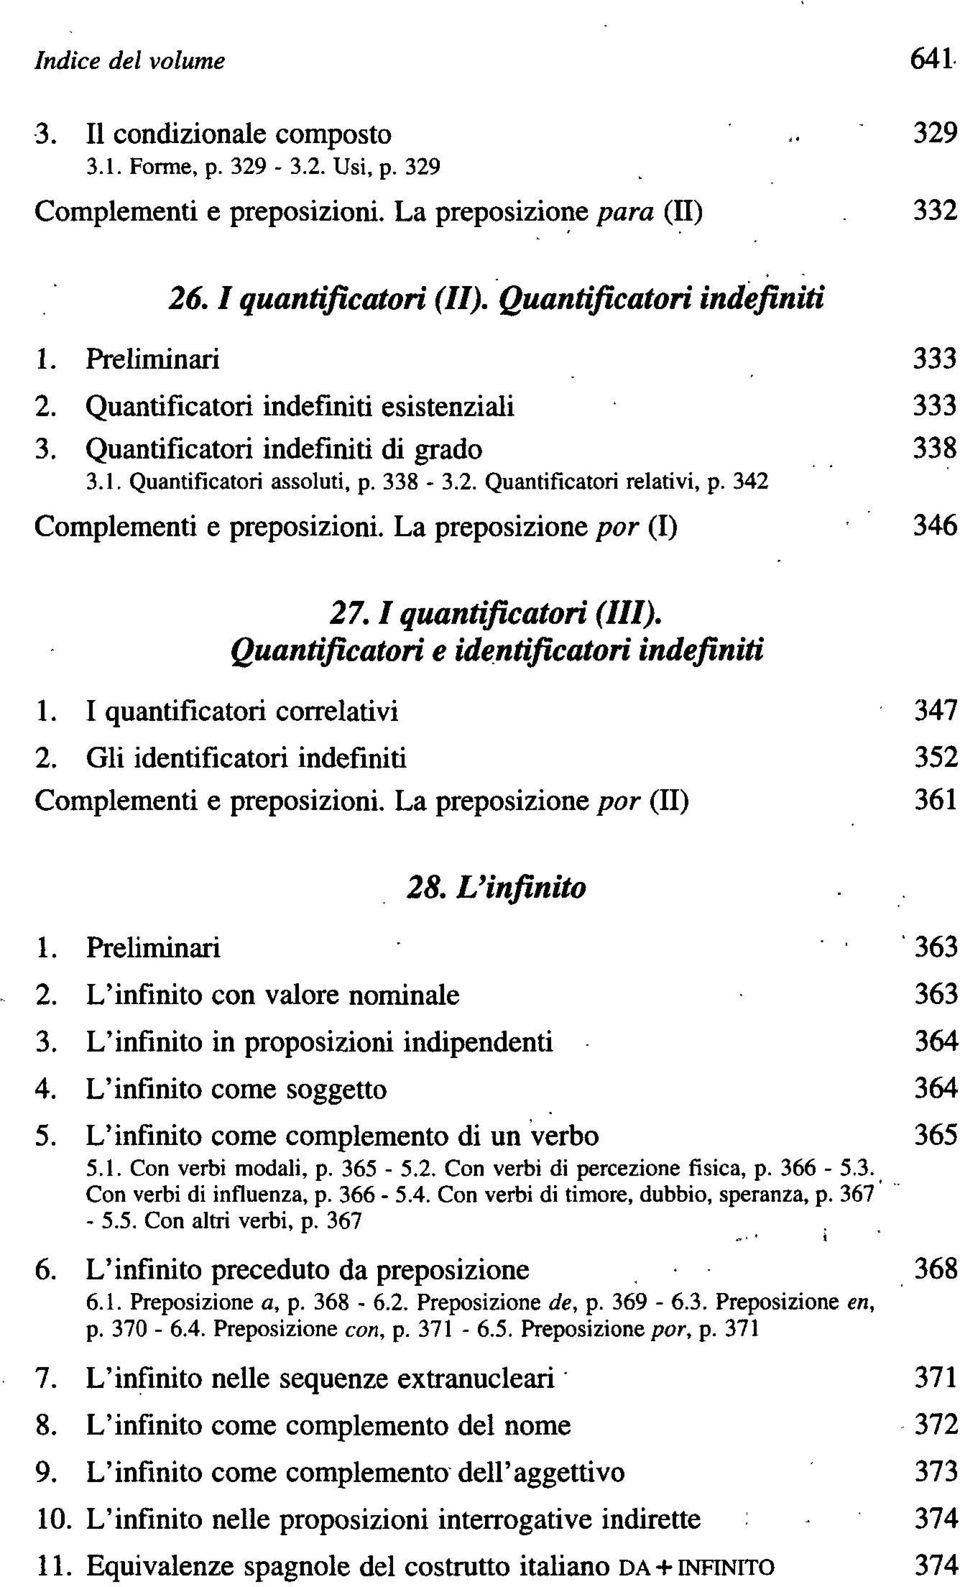 342 Complementi e preposizioni. La preposizione por (I) 1. I quantificatori correlativi 27.1 quantificatori (III). Quantificatori e identificatori indefiniti 2.